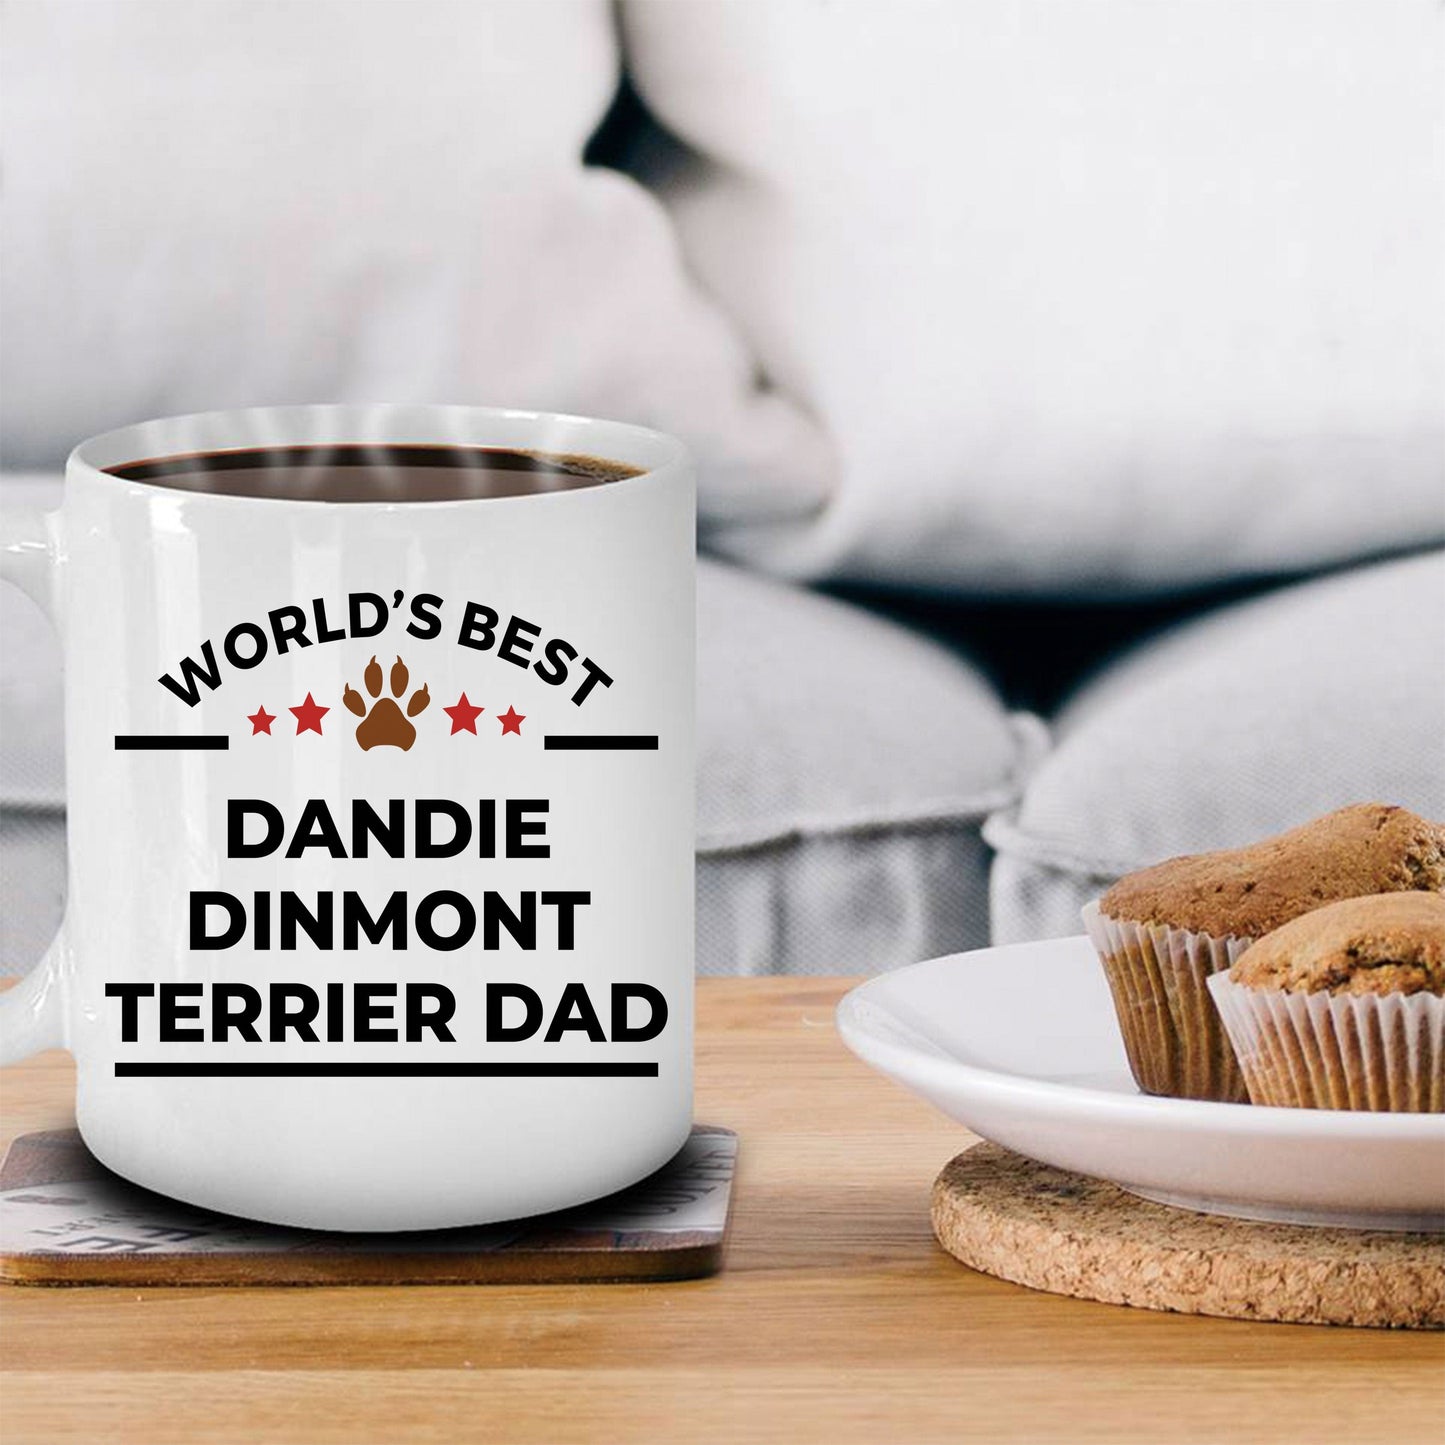 Dandie Dinmont Terrier Dog Lover Gift World's Best Dad Birthday Father's Day Ceramic Coffee Mug